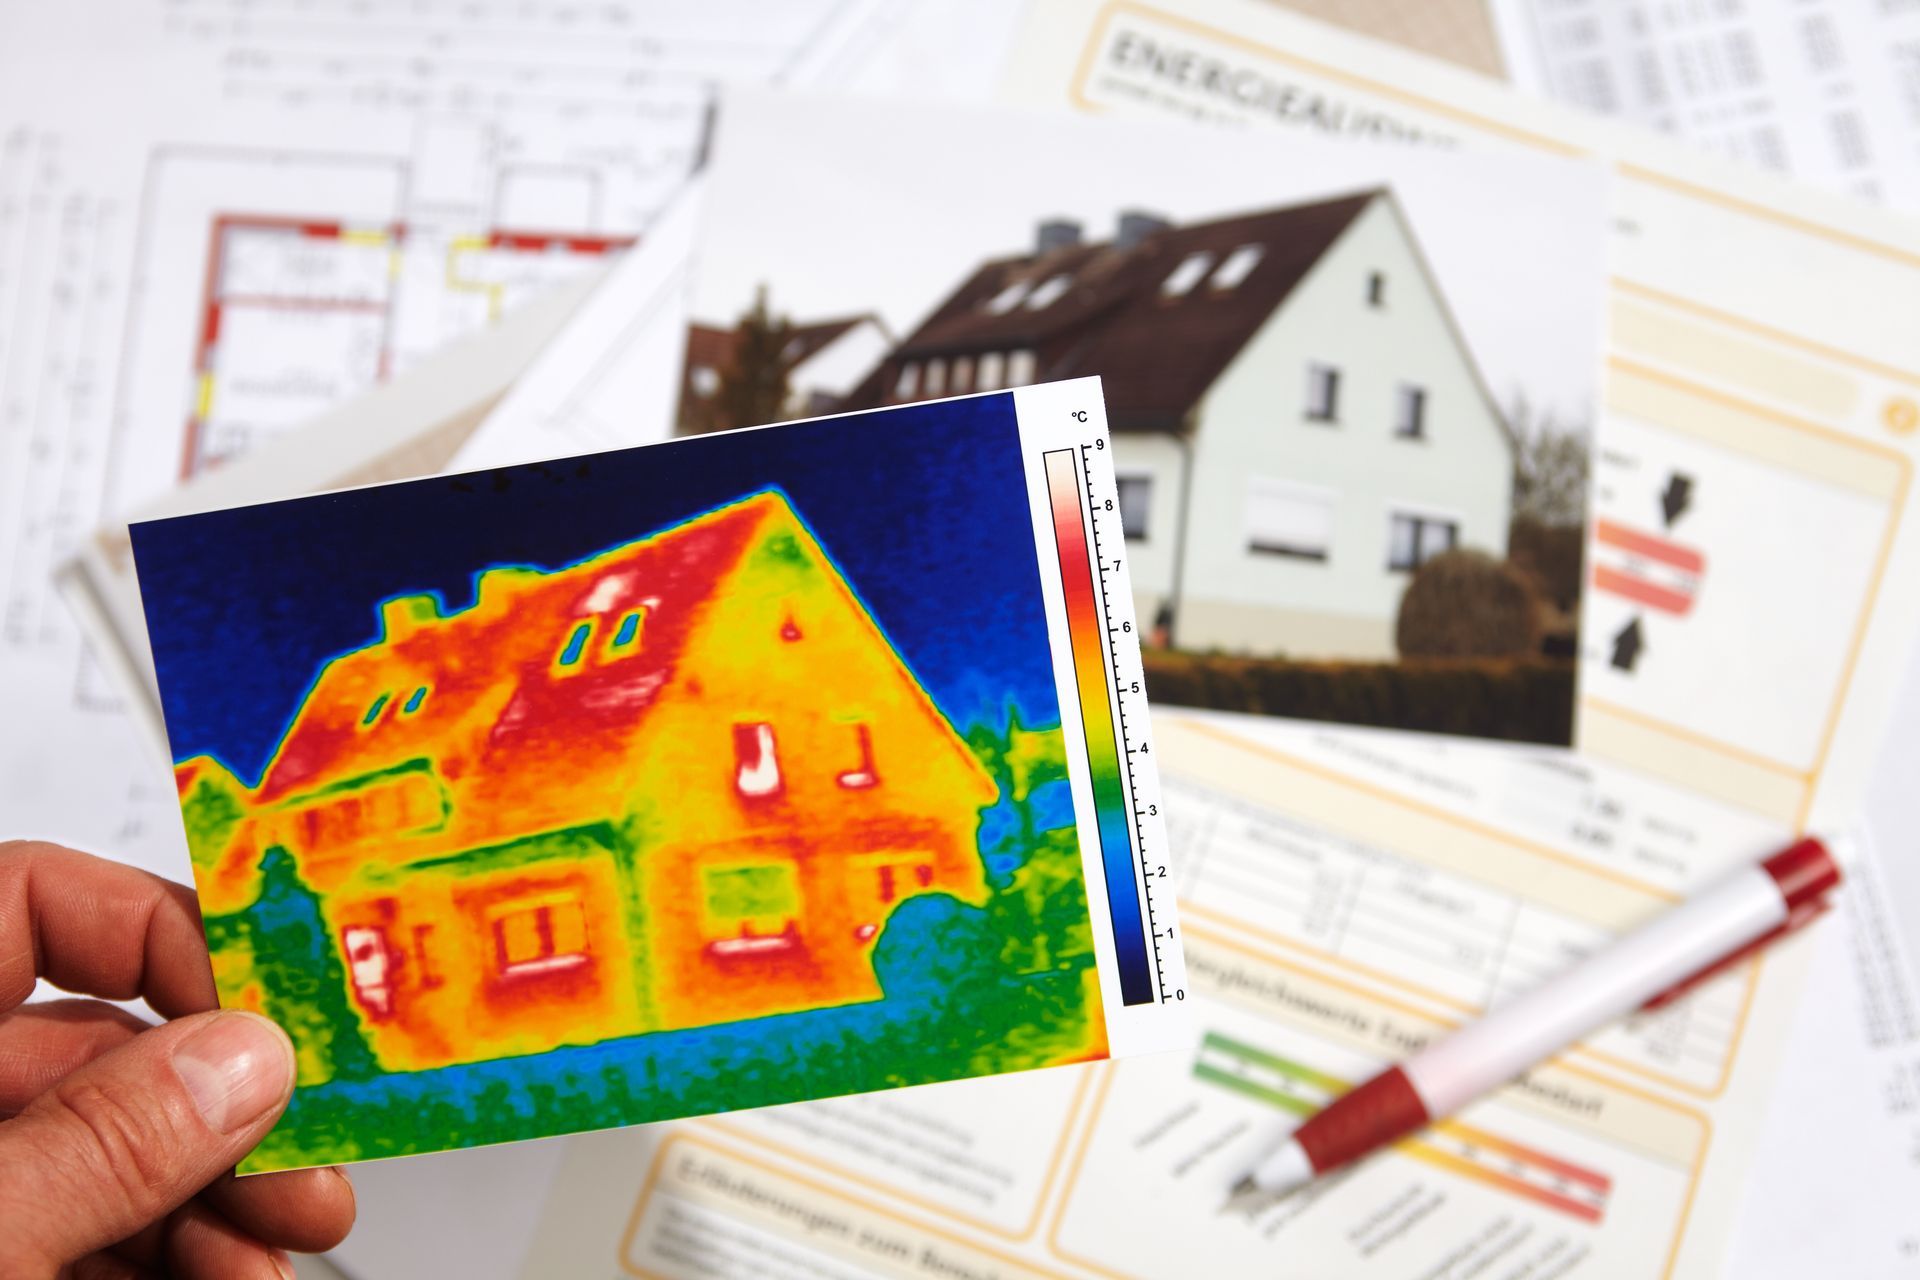 Une photo de maison prise en infrarouge